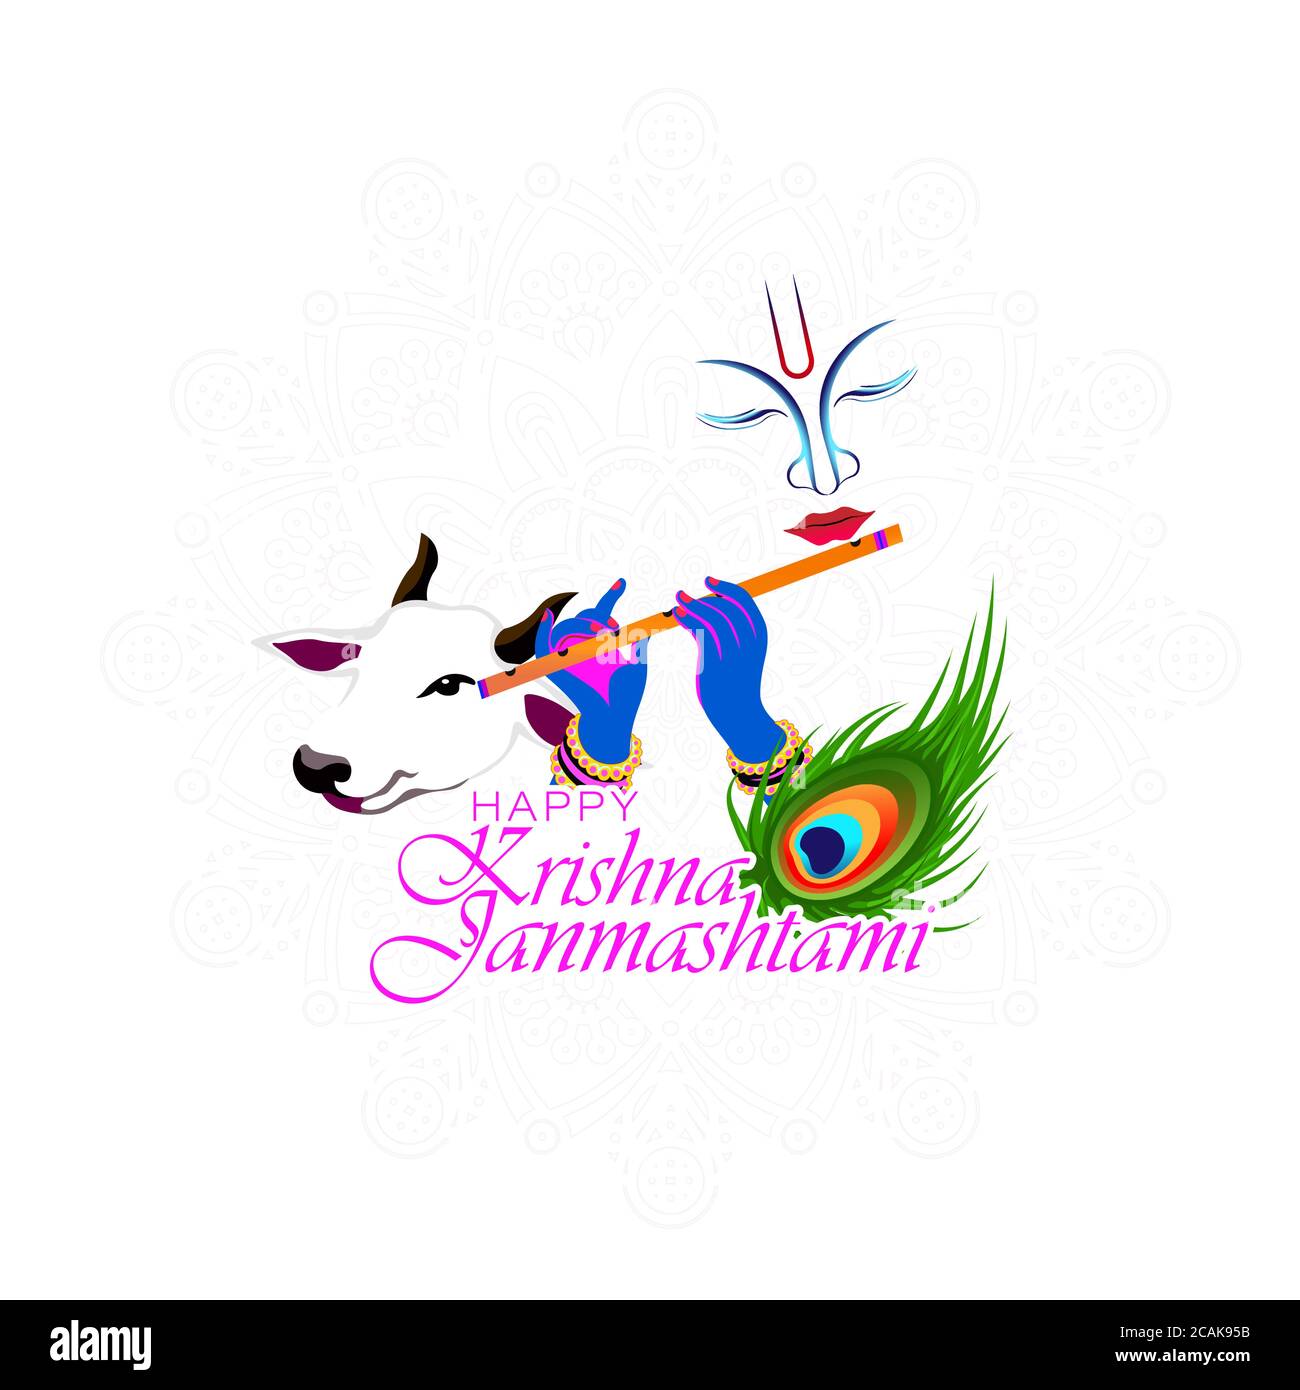 Illustrazione vettoriale di Shri Krishna Jammashtami significa compleanno del Signore Krishna. Strumento musicale bansuri e piuma di pavone. Illustrazione Vettoriale